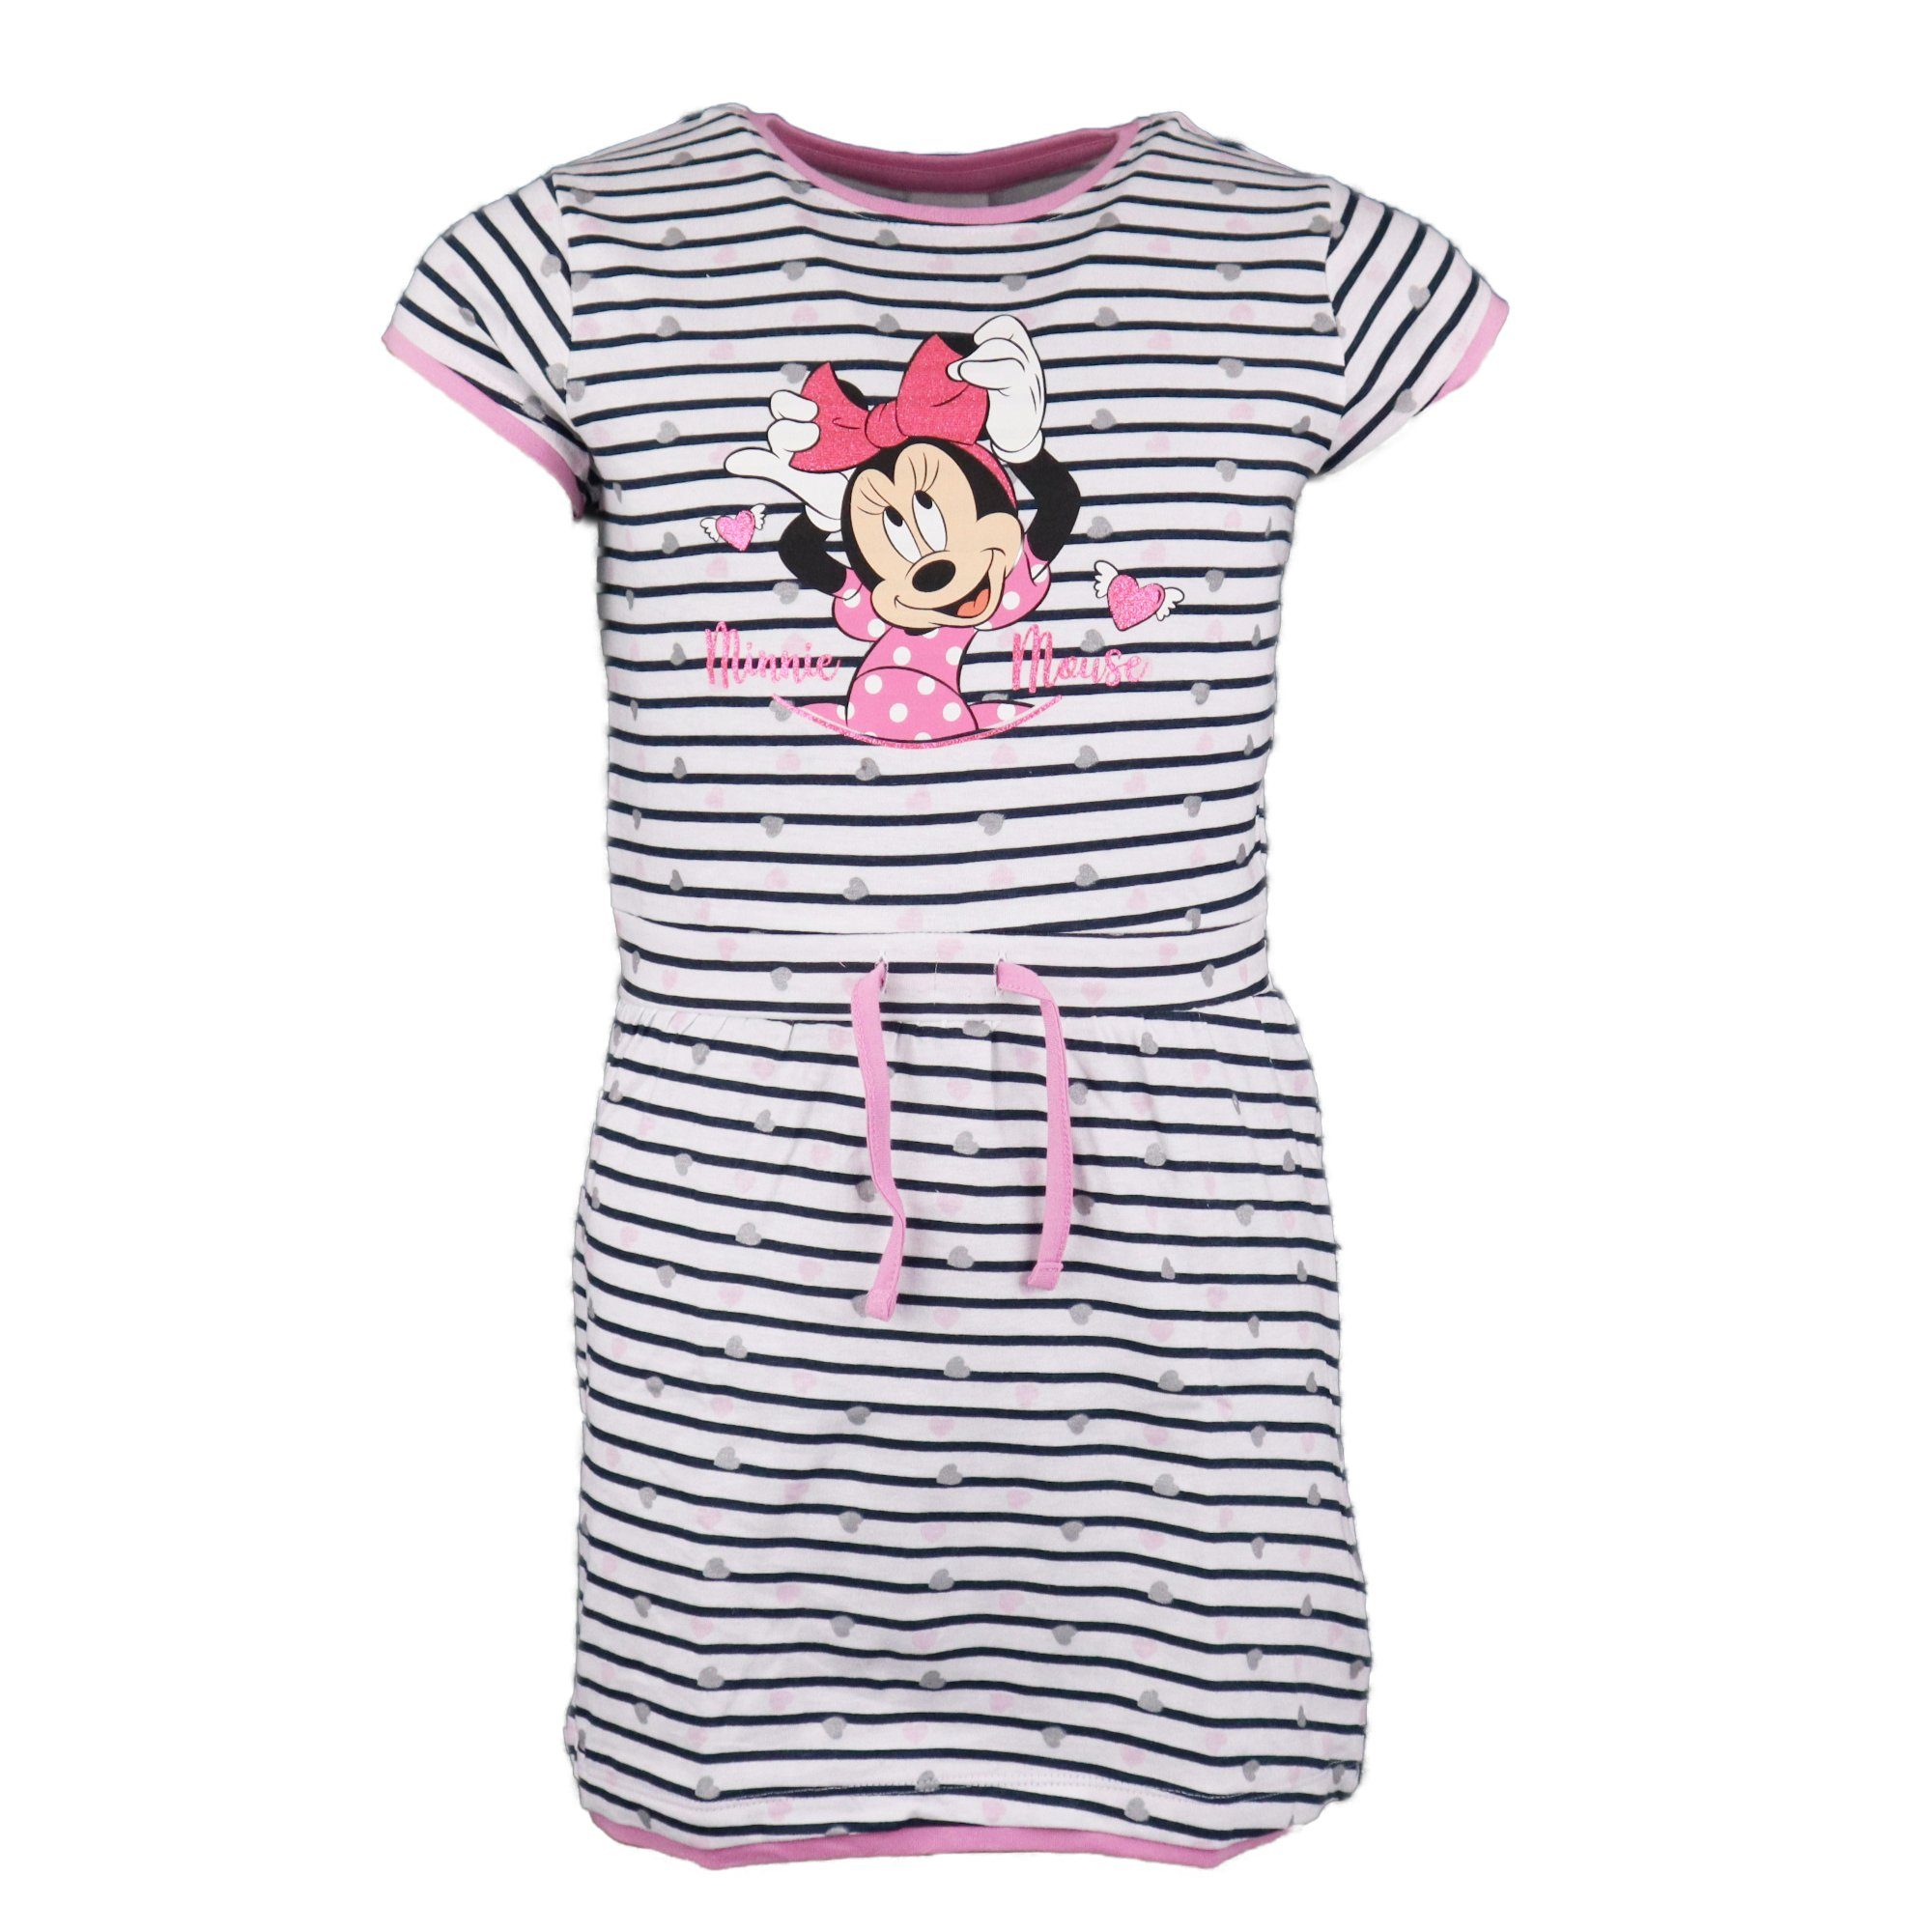 Disney Minnie Mouse Sommerkleid Minnie Maus Mädchen Kinder Kleid gestreift Gr. 104 bis 134, 100% Baumwolle | Sommerkleider